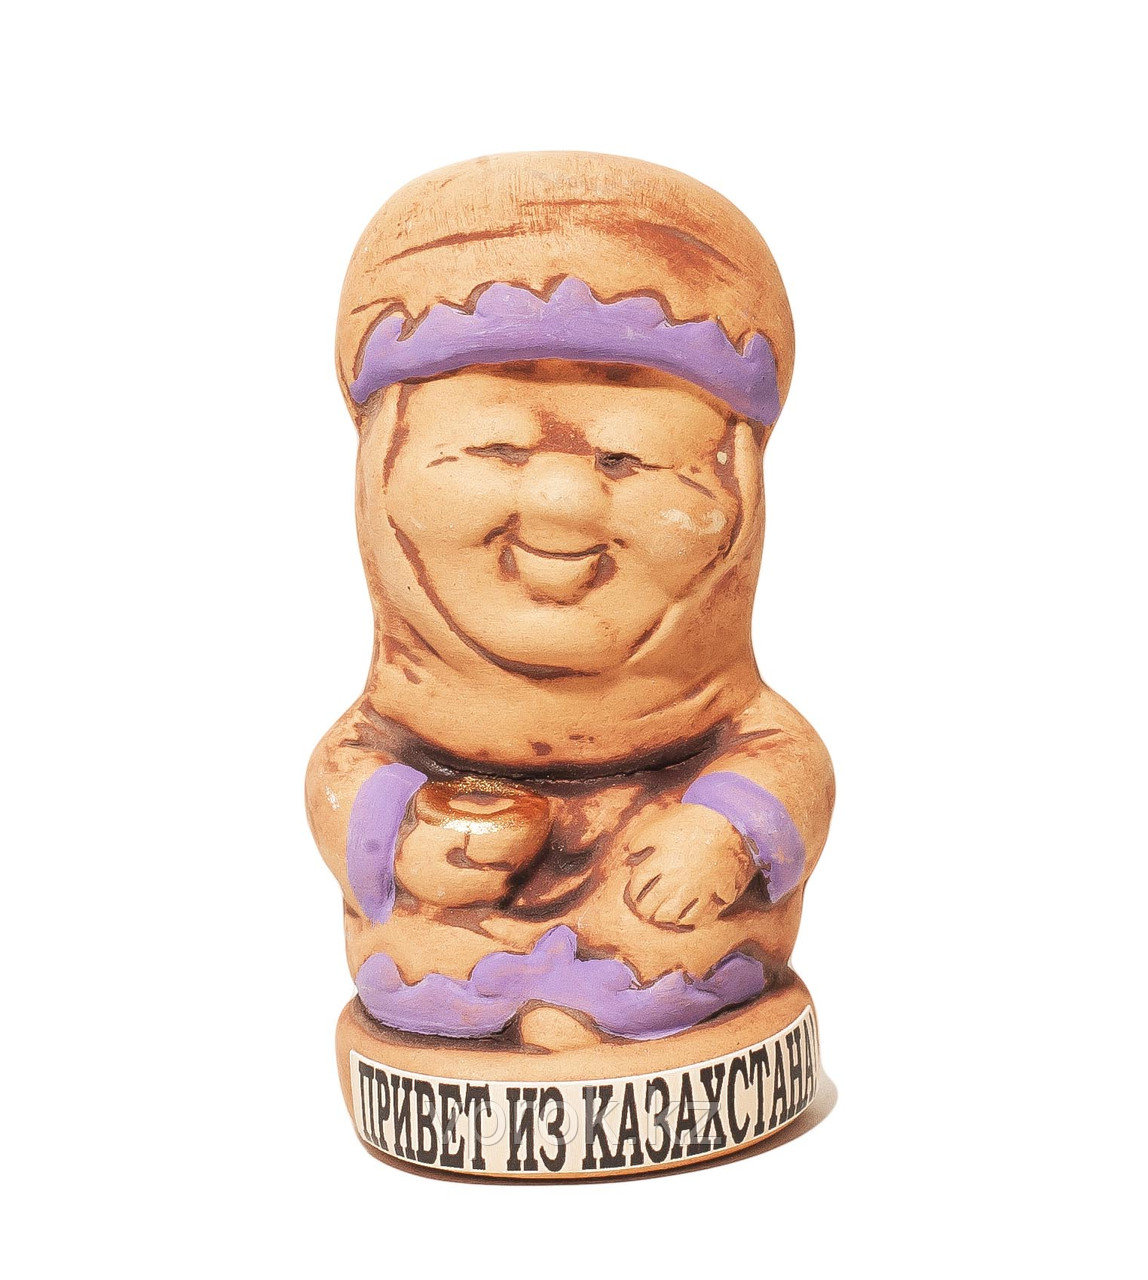 Статуэтка глиняная - Апашка с надписью "Привет из Казахстана", 8 см